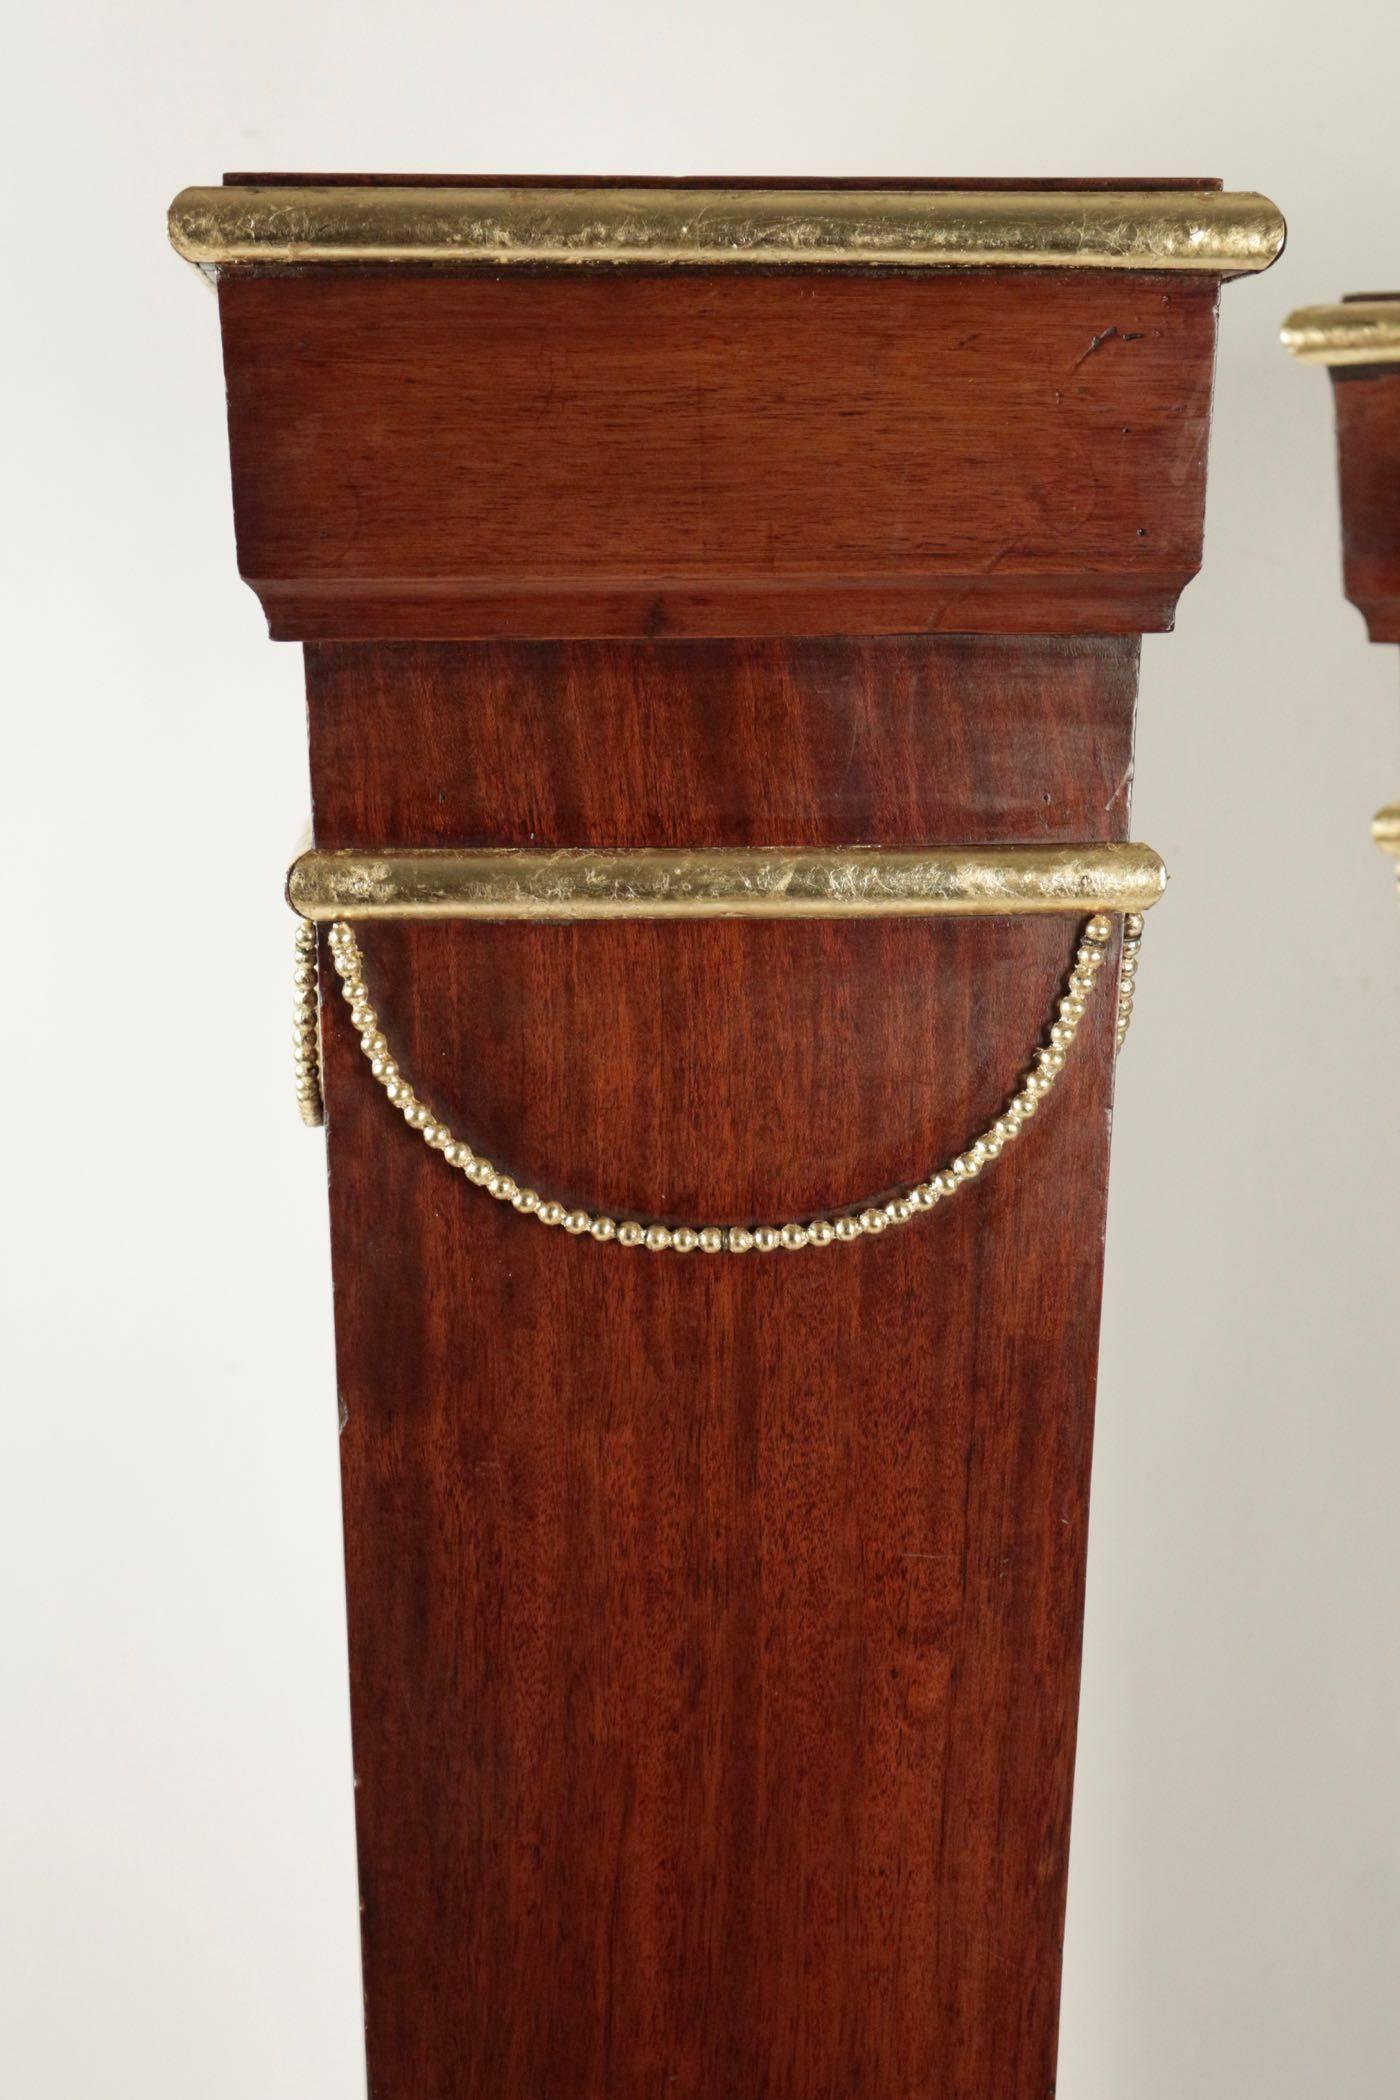 Pair of sheaths, consoles, mahogany, gold leaf, 19th century, Napoleon-III. Measures: H 101 cm, L 28 cm, P 22 cm.